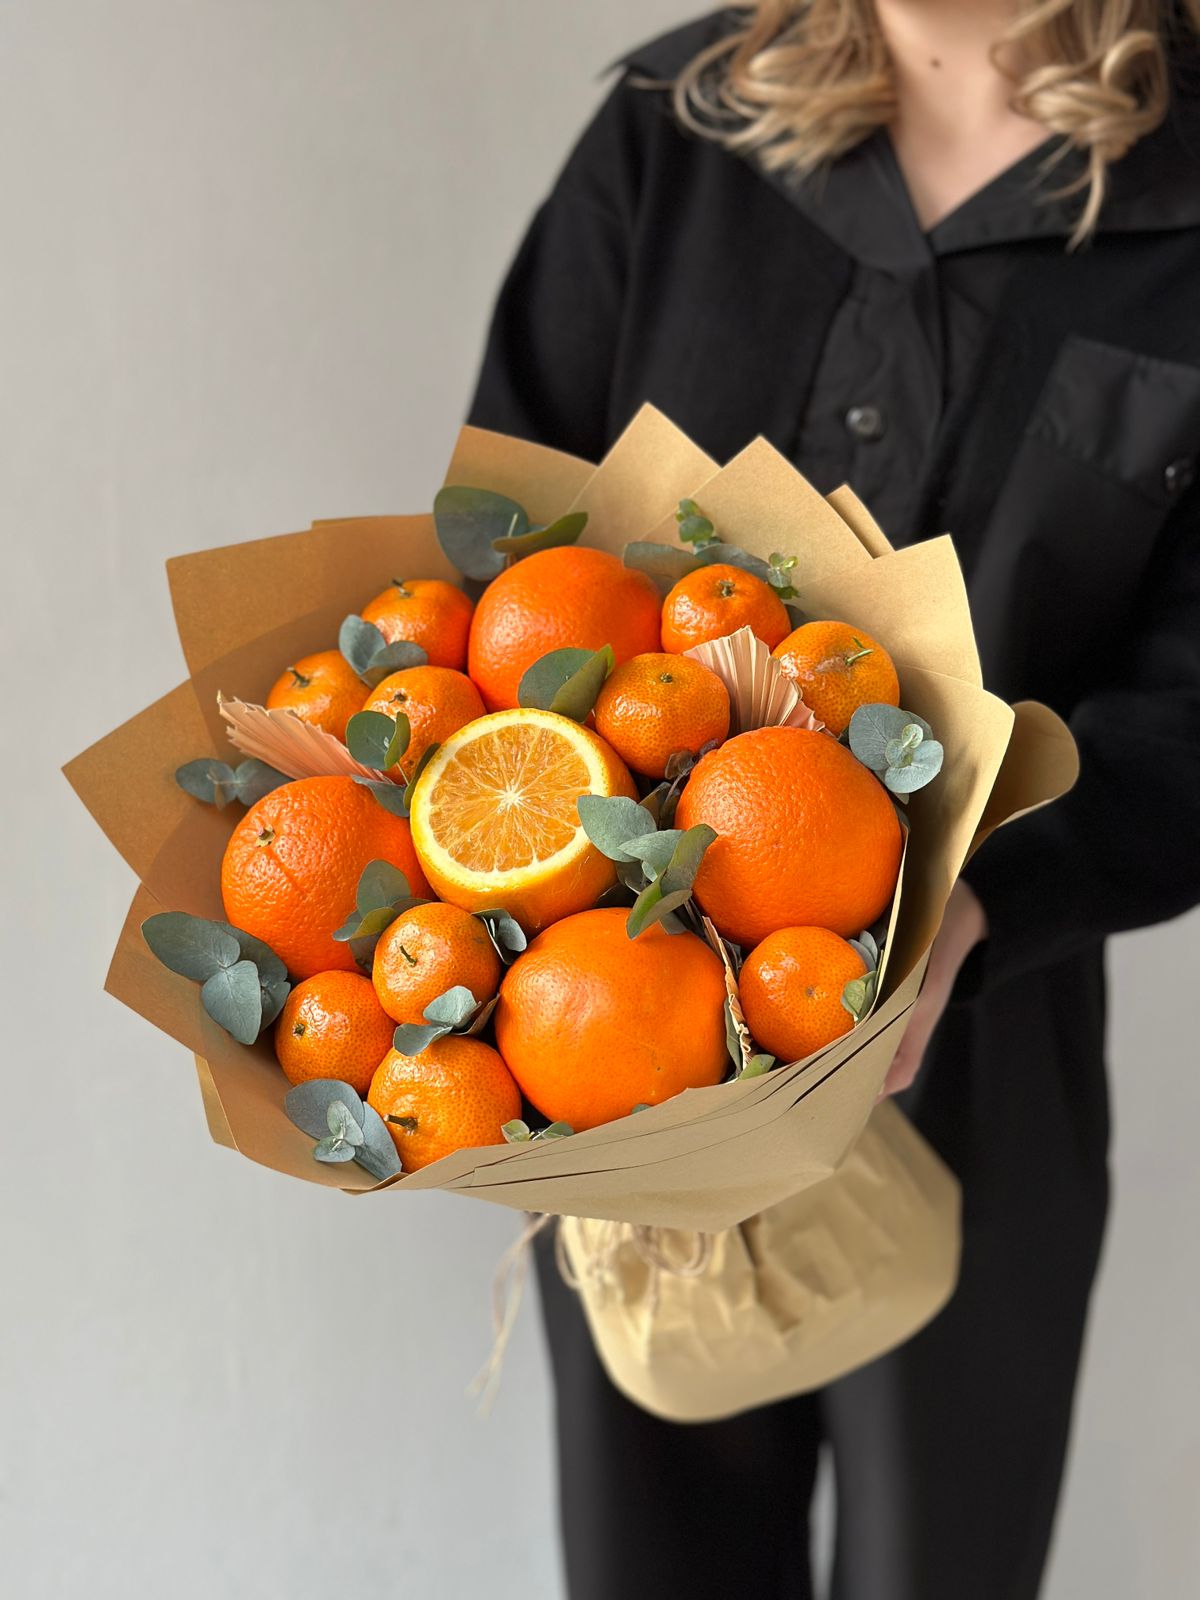 Фруктовый букет "Цитрусовый бриз" из апельсинов, мандаринов и эвкалипта